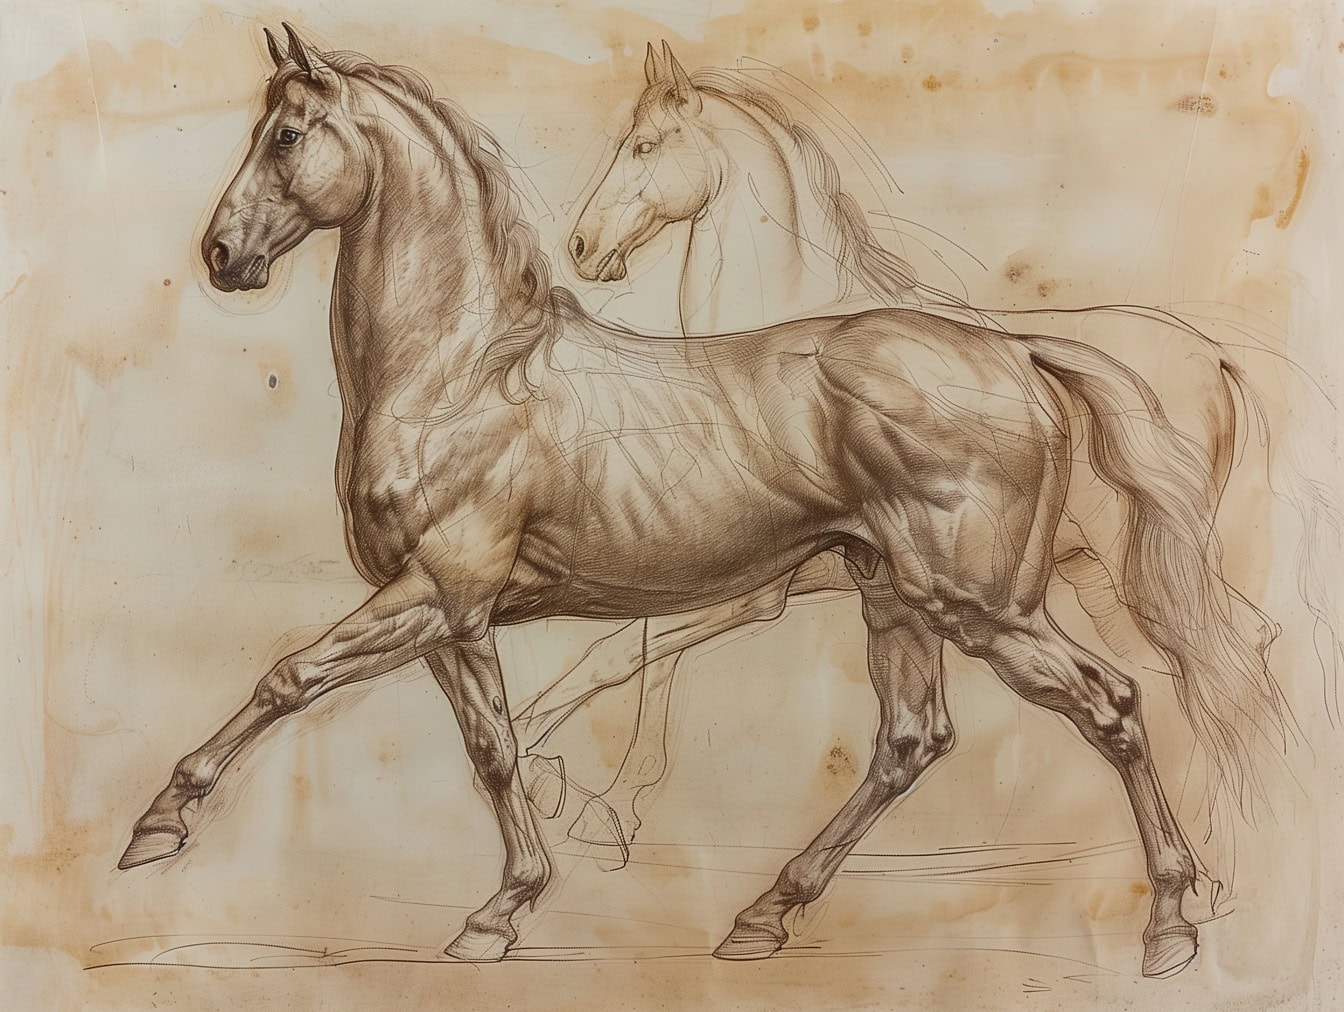 Dibujo de dos caballos en papel viejo, el semental en el frente está terminado, mientras que el caballo en el fondo sigue siendo un boceto de trabajo